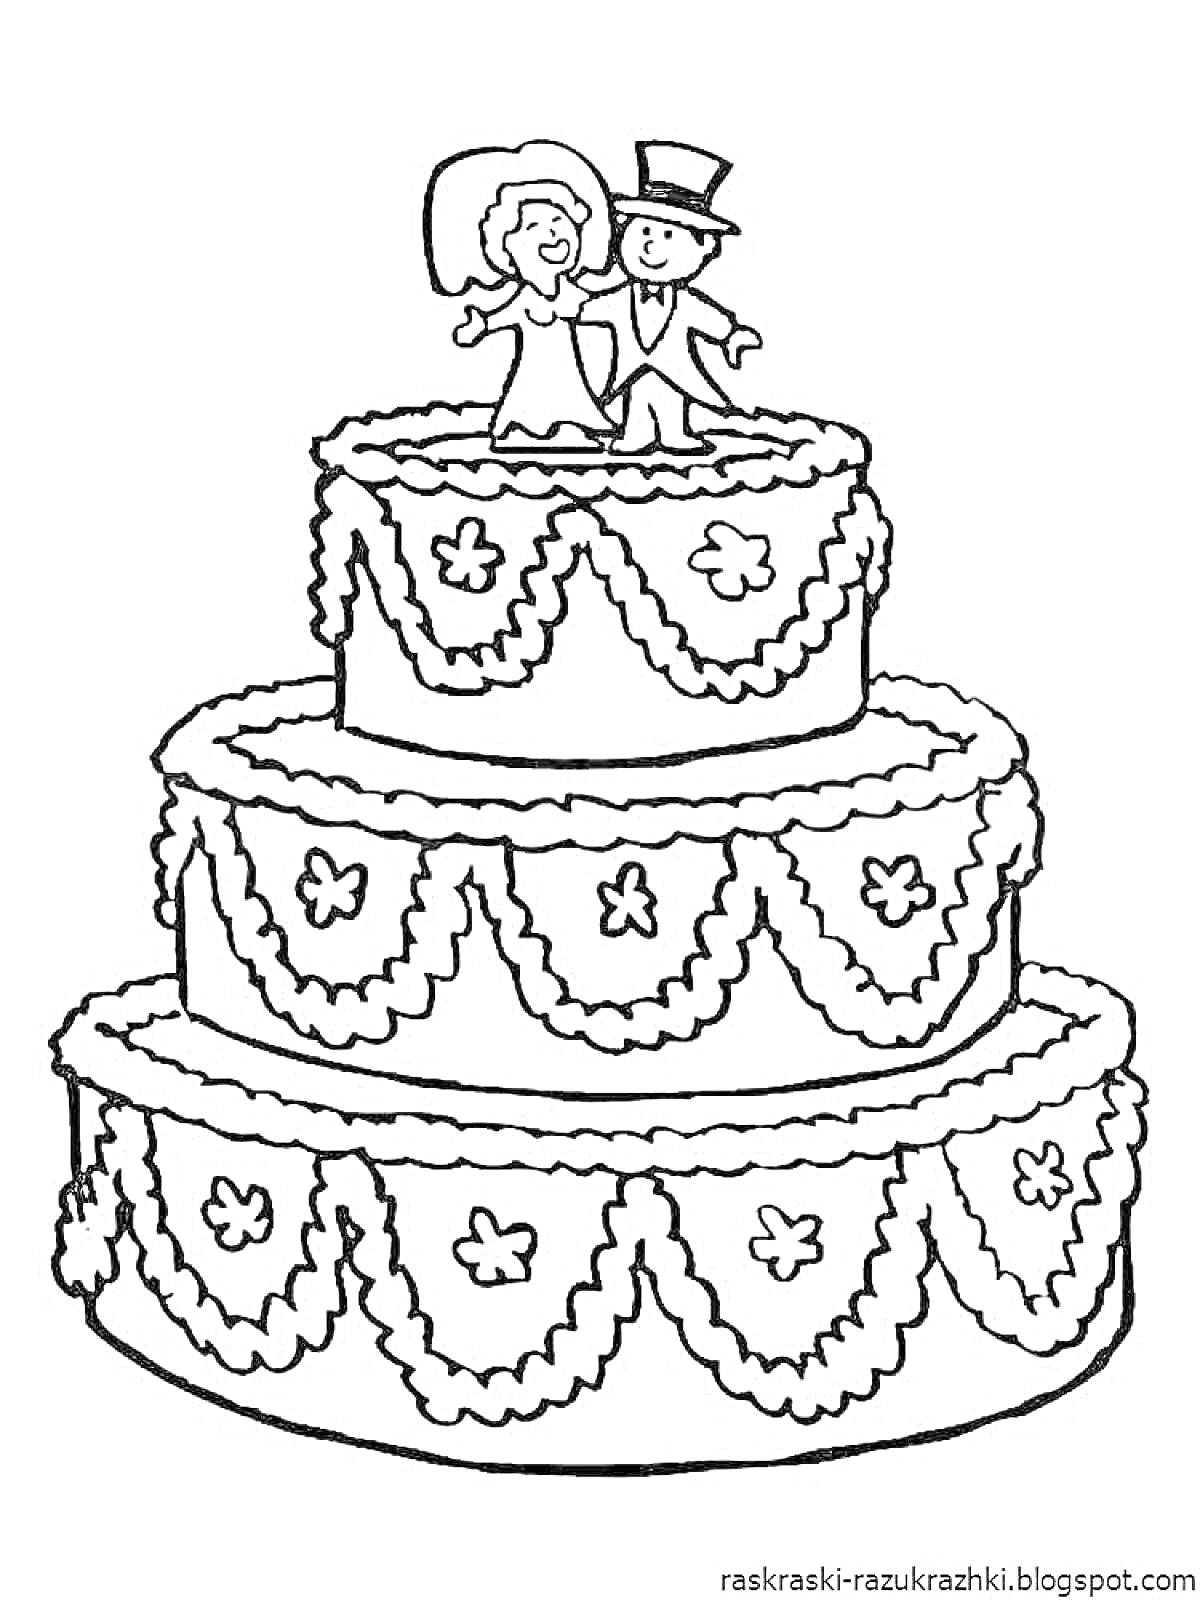 Раскраска Трёхъярусный торт с фигурками жениха и невесты, украшенный цветами и гирляндами.